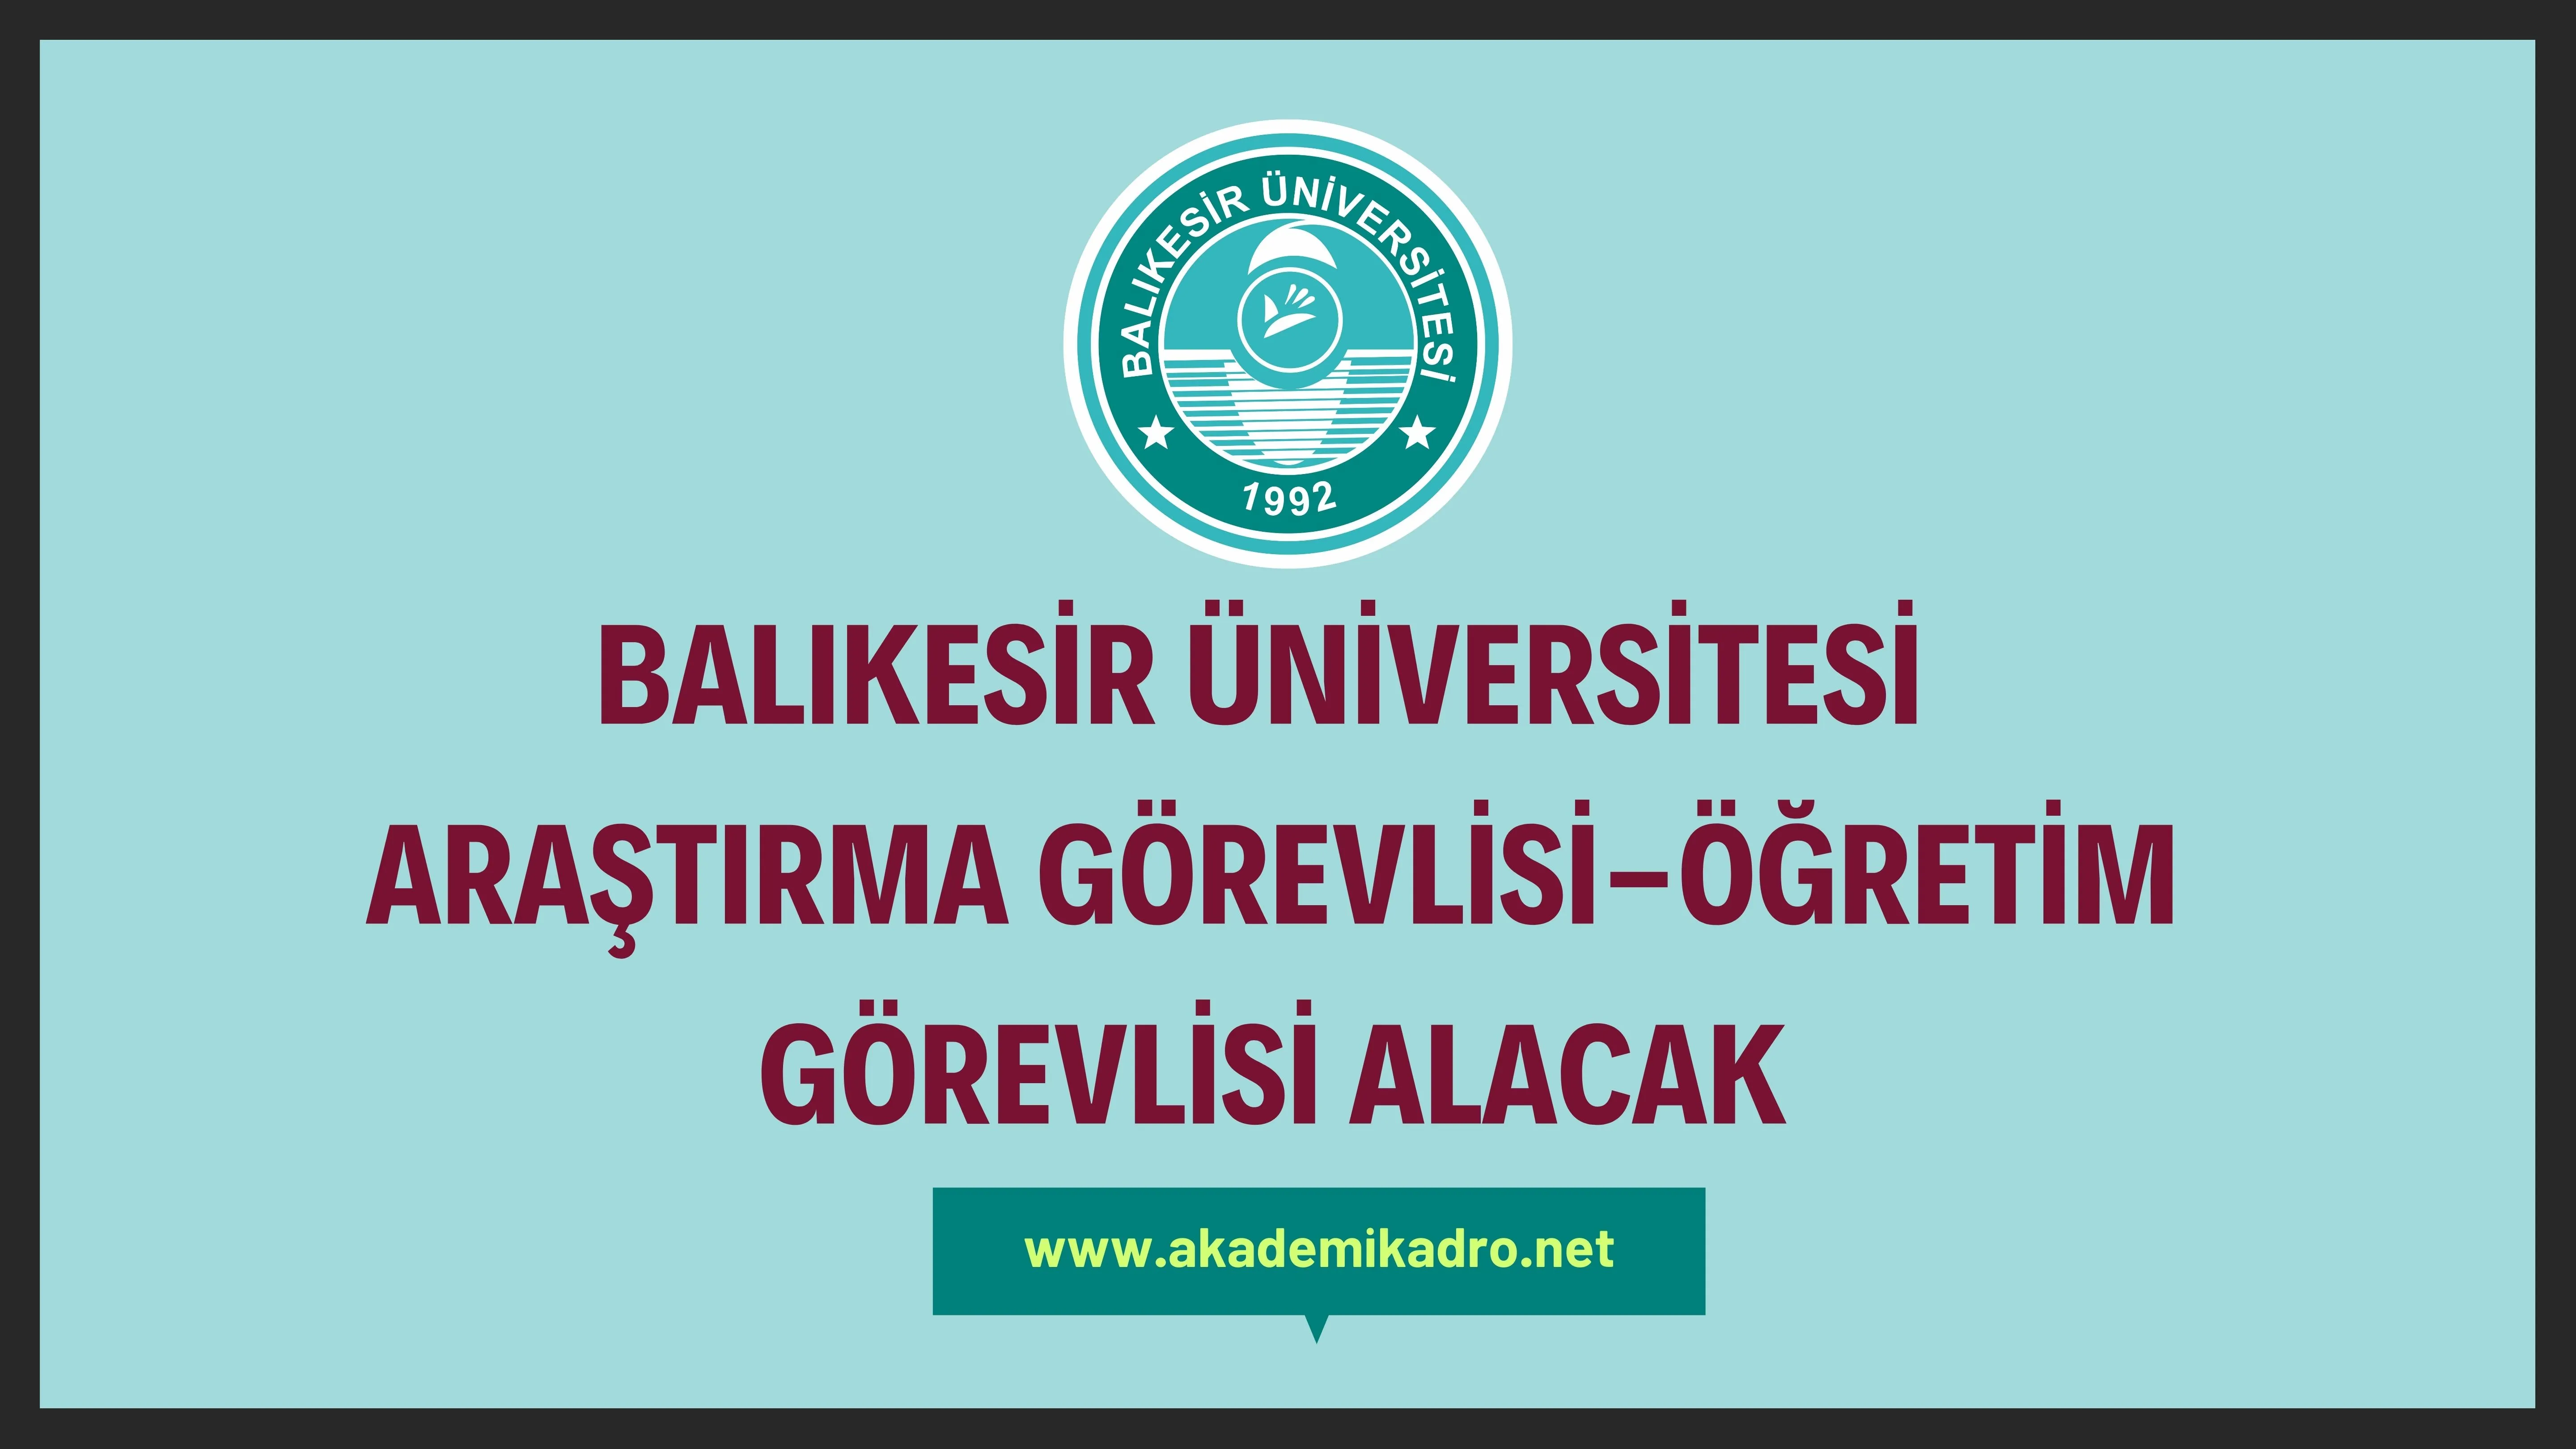 Balıkesir Üniversitesi 4 Araştırma görevlisi ve 2 öğretim görevlisi alacaktır. Son başvuru tarihi 03 Temmuz 2023